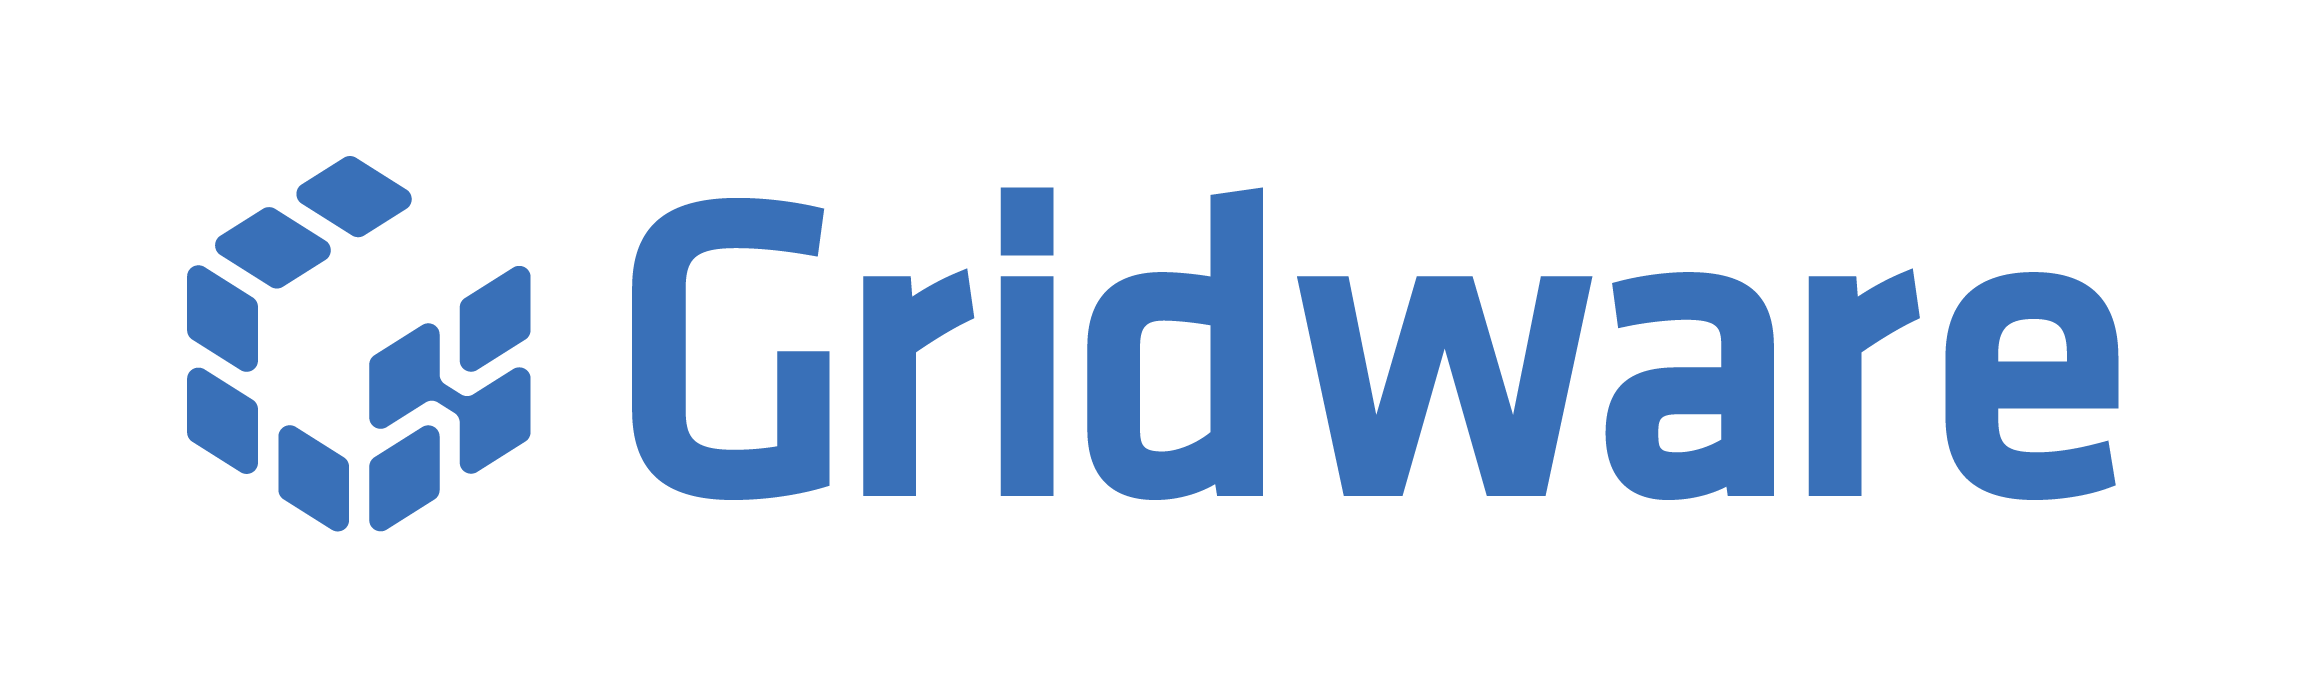 Gridware